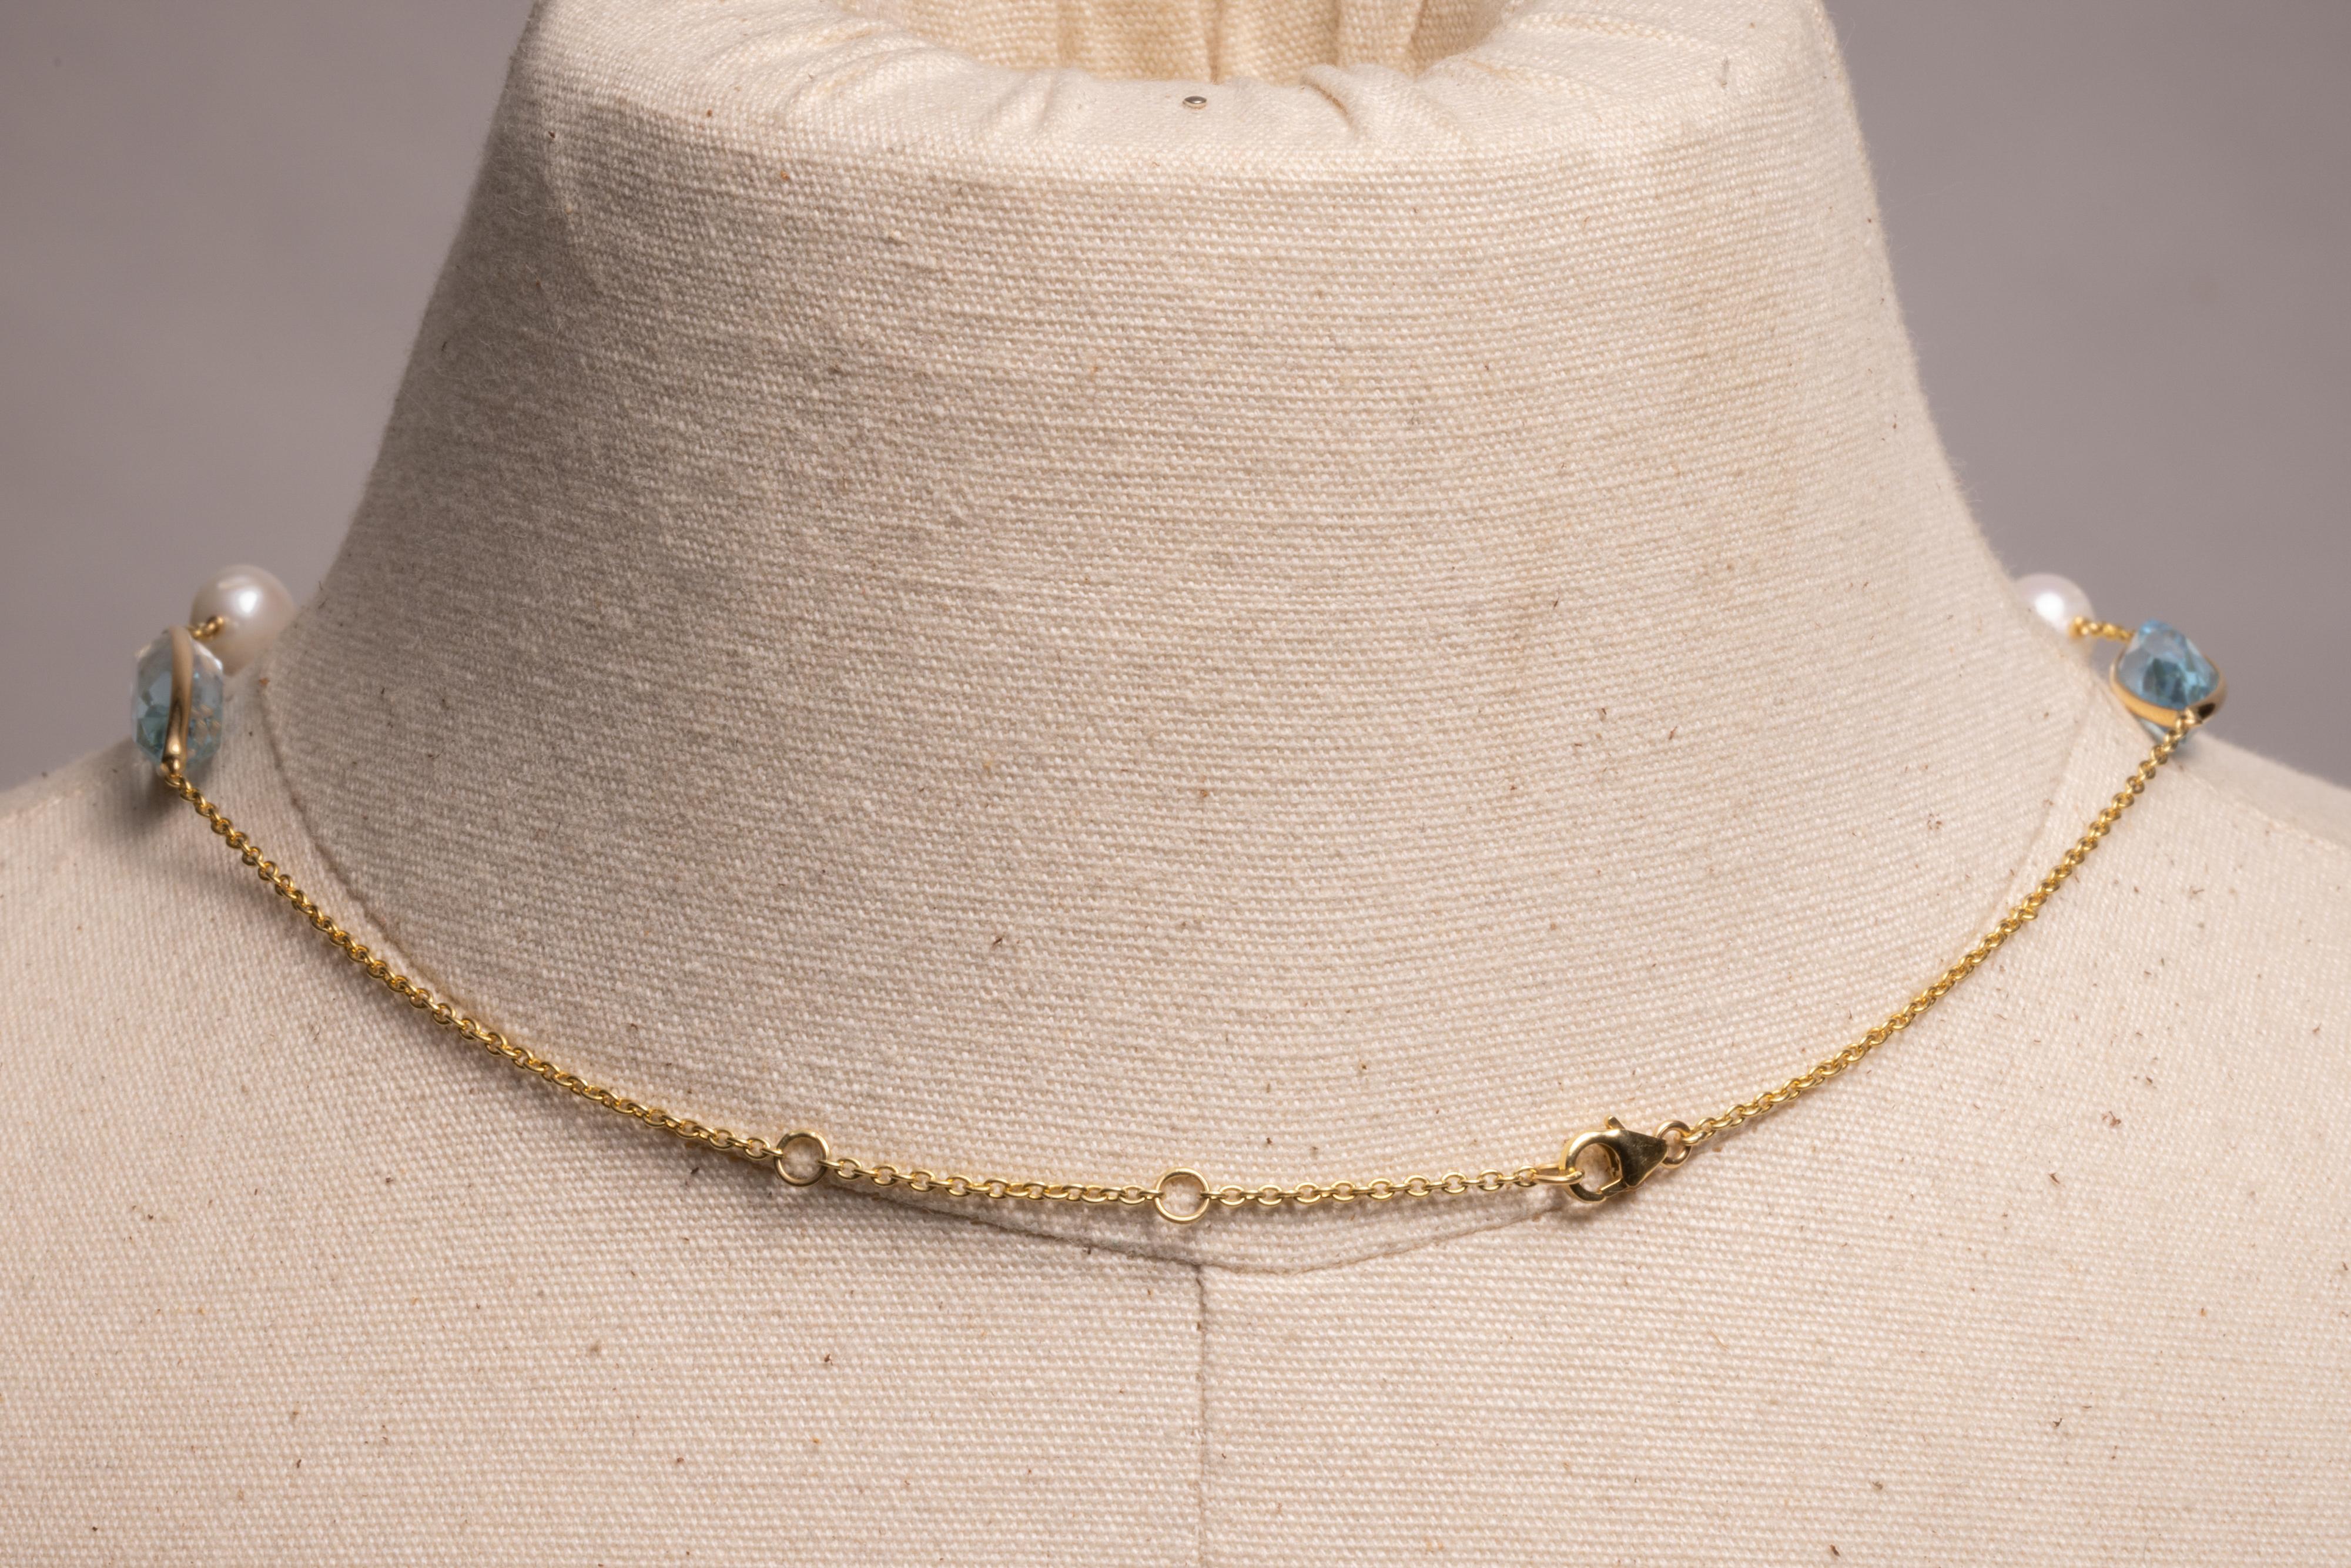 Un superbe collier composé de cinq aigues-marines marquises à facettes bordées d'or, entrecoupées de perles d'eau douce et d'une chaîne en or 18 carats.  Des anneaux optionnels dans le dos permettent d'ajuster la longueur entre 16 et 18 pouces.  Le